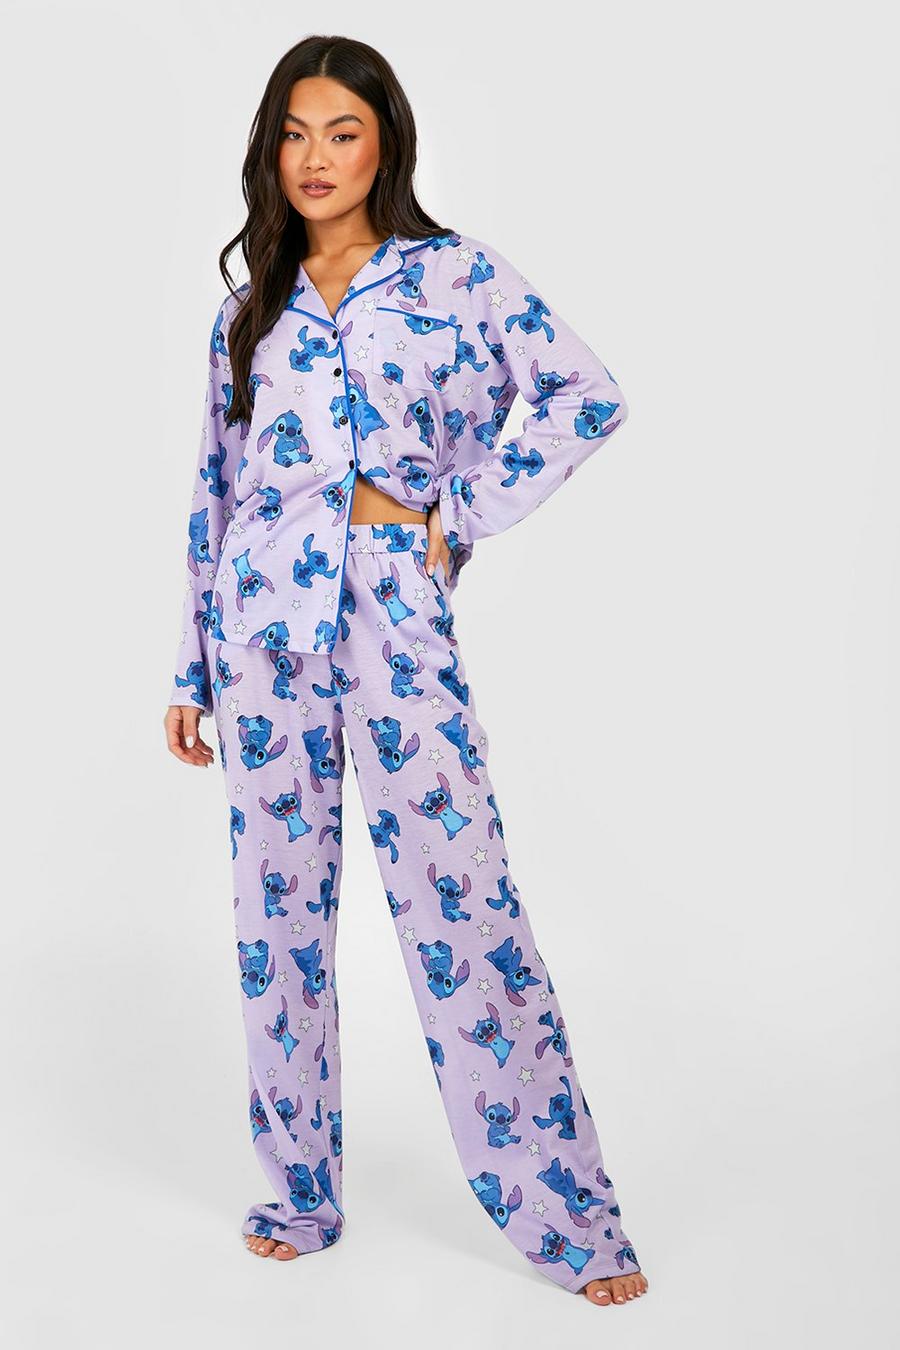 Pijama de Disney con pantalón largo, botones y estampado de Lilo & Stitch, Lilac morado